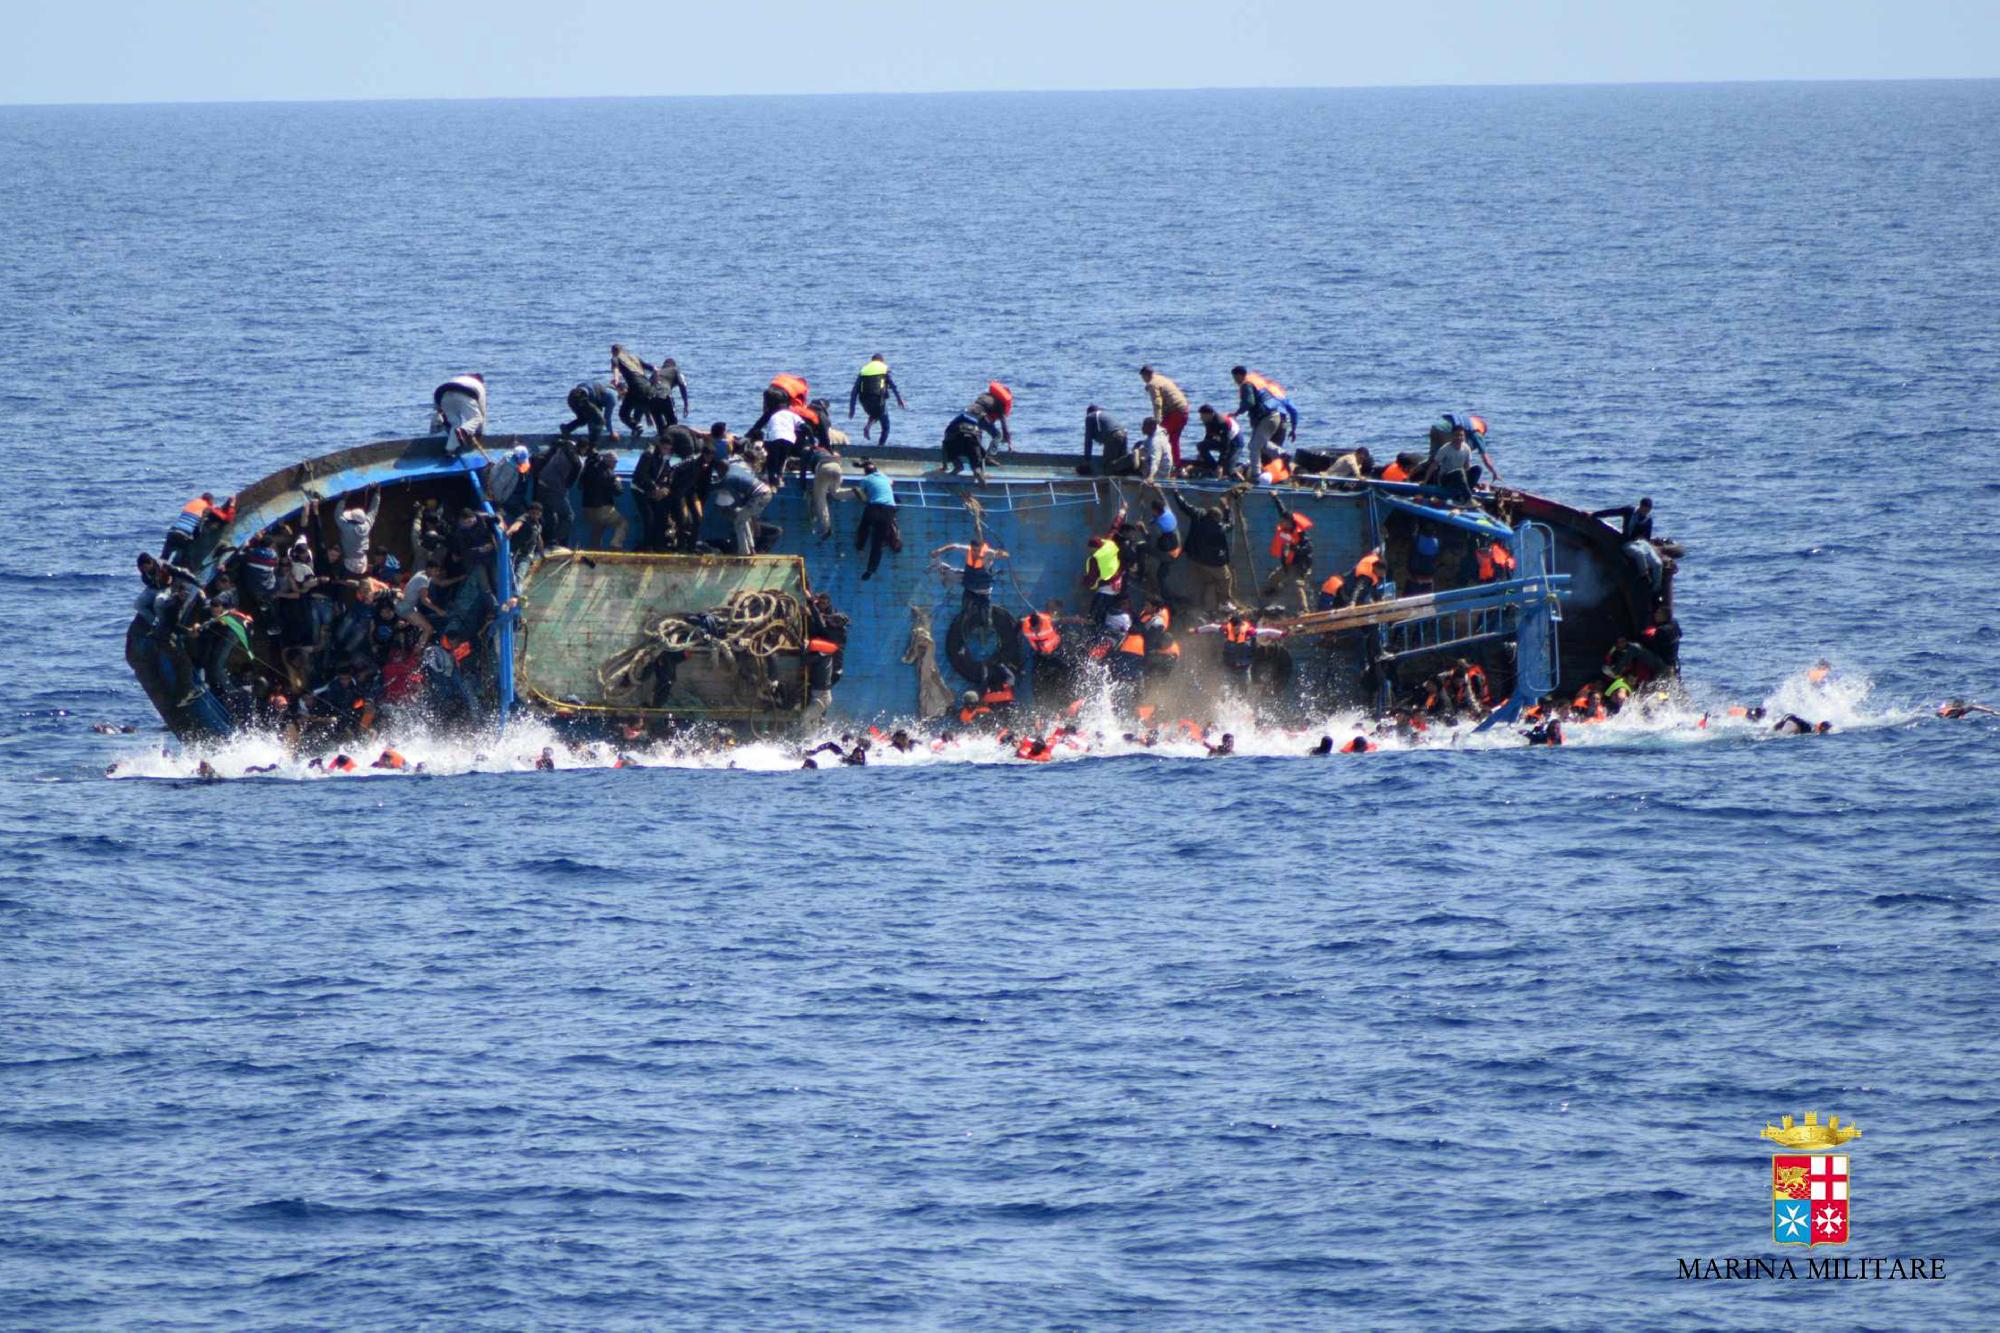  Engedélyt kapott a kikötésre Lampedusán egy migránsokkal érkező civil mentőhajó